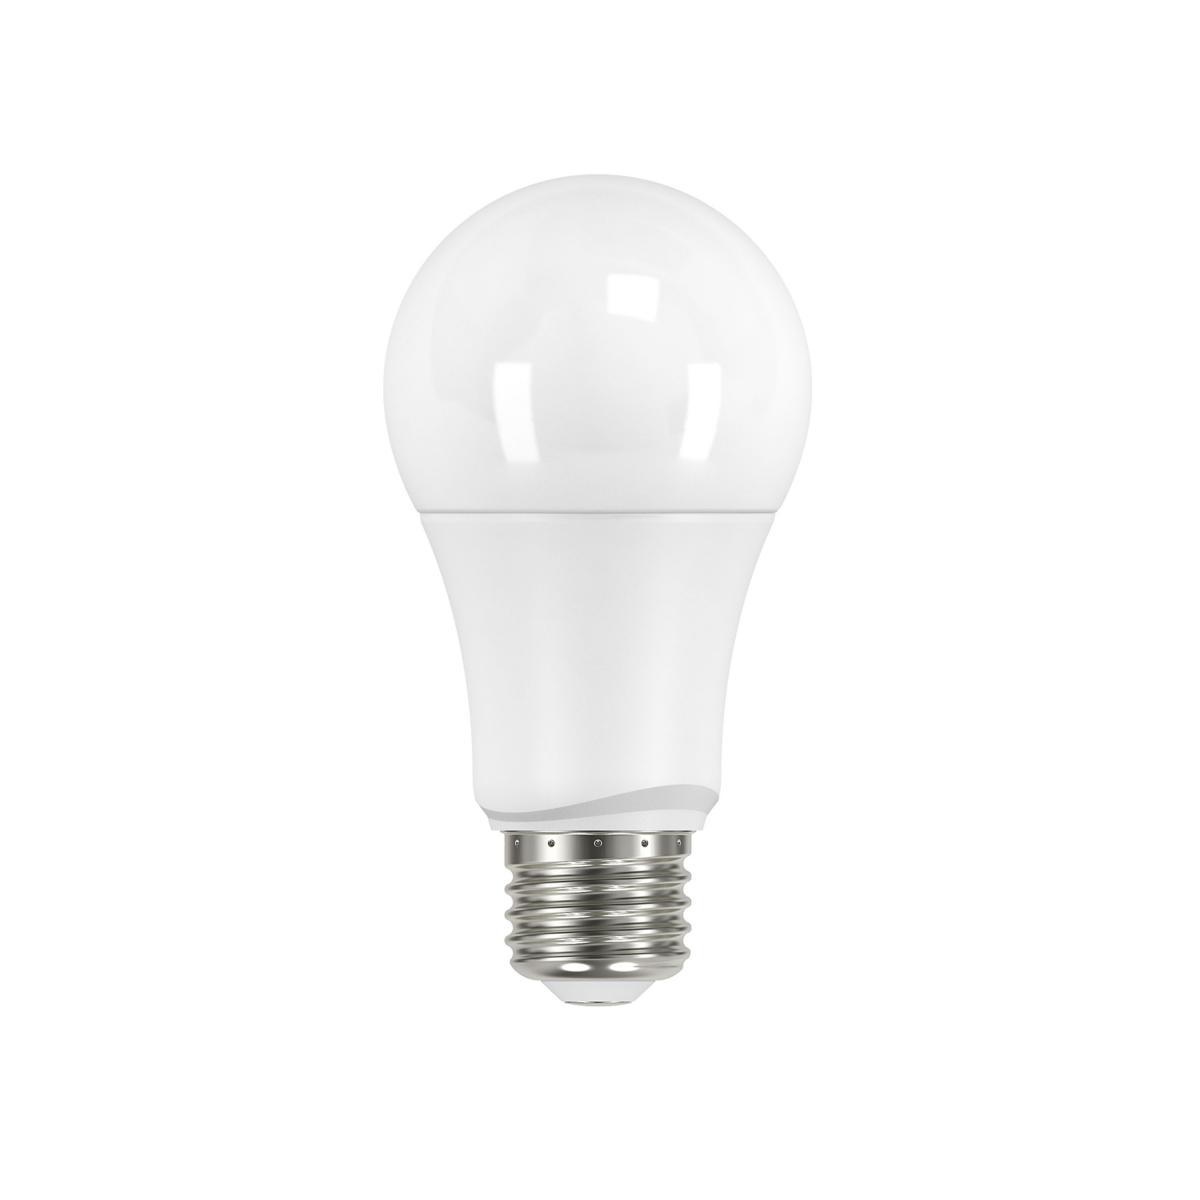 Supershine 9.5W Lumos LED A19 Medium E26 120V 4000K Light Bulb&#44; White - Pack of 4